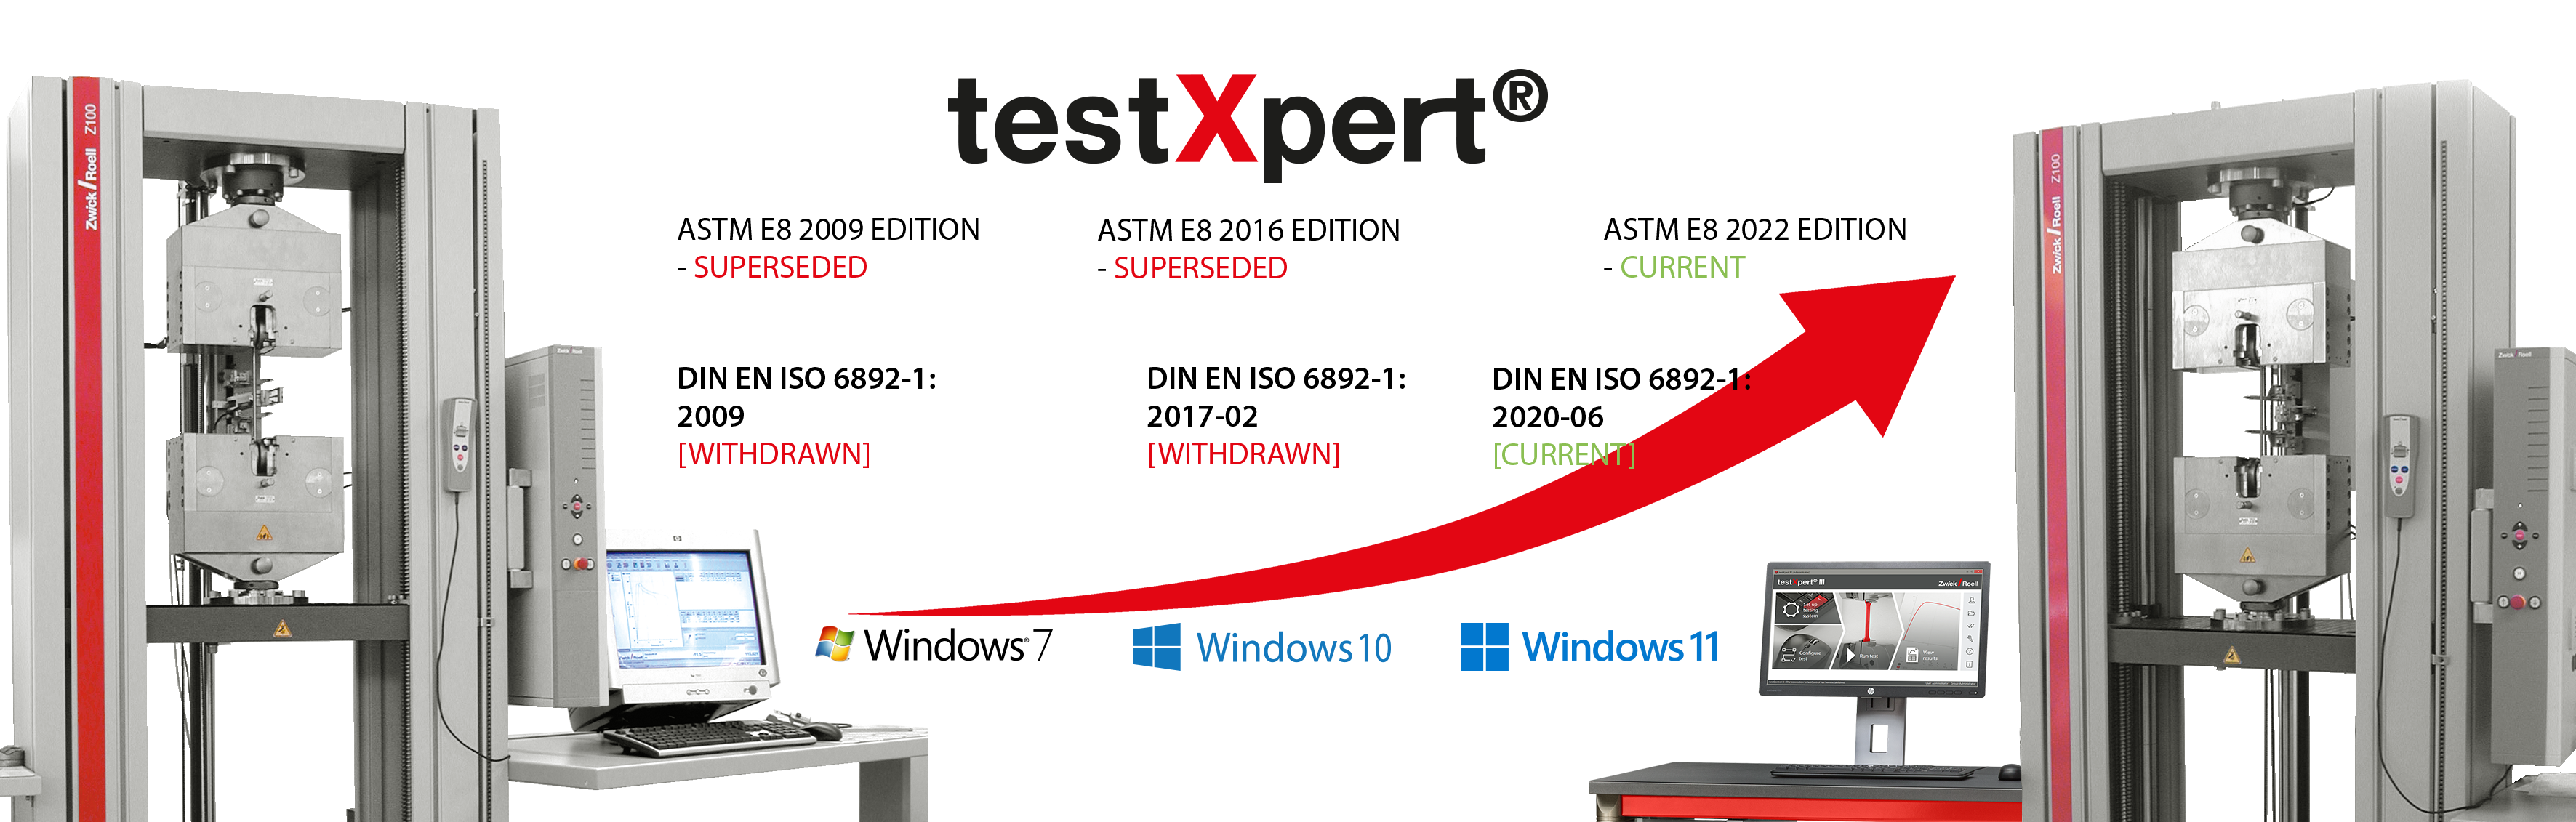 无论是标准变更还是引入新的操作系统，testXpert都会与您一起成长